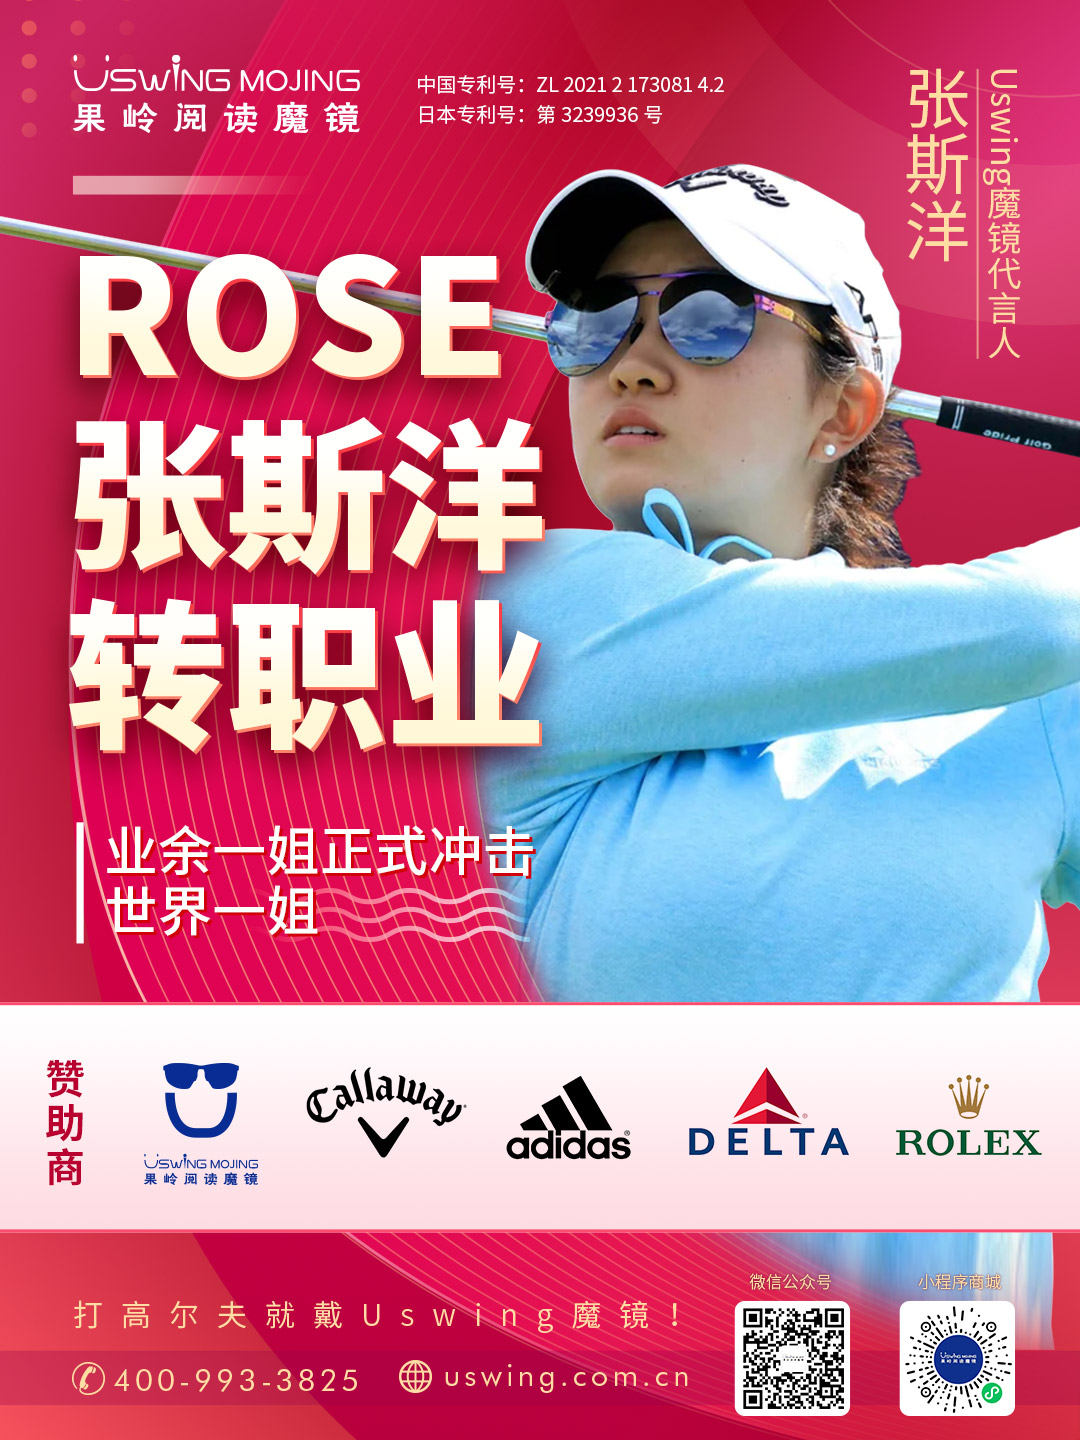 Rose张斯洋于5月26日正式转为职业球员！